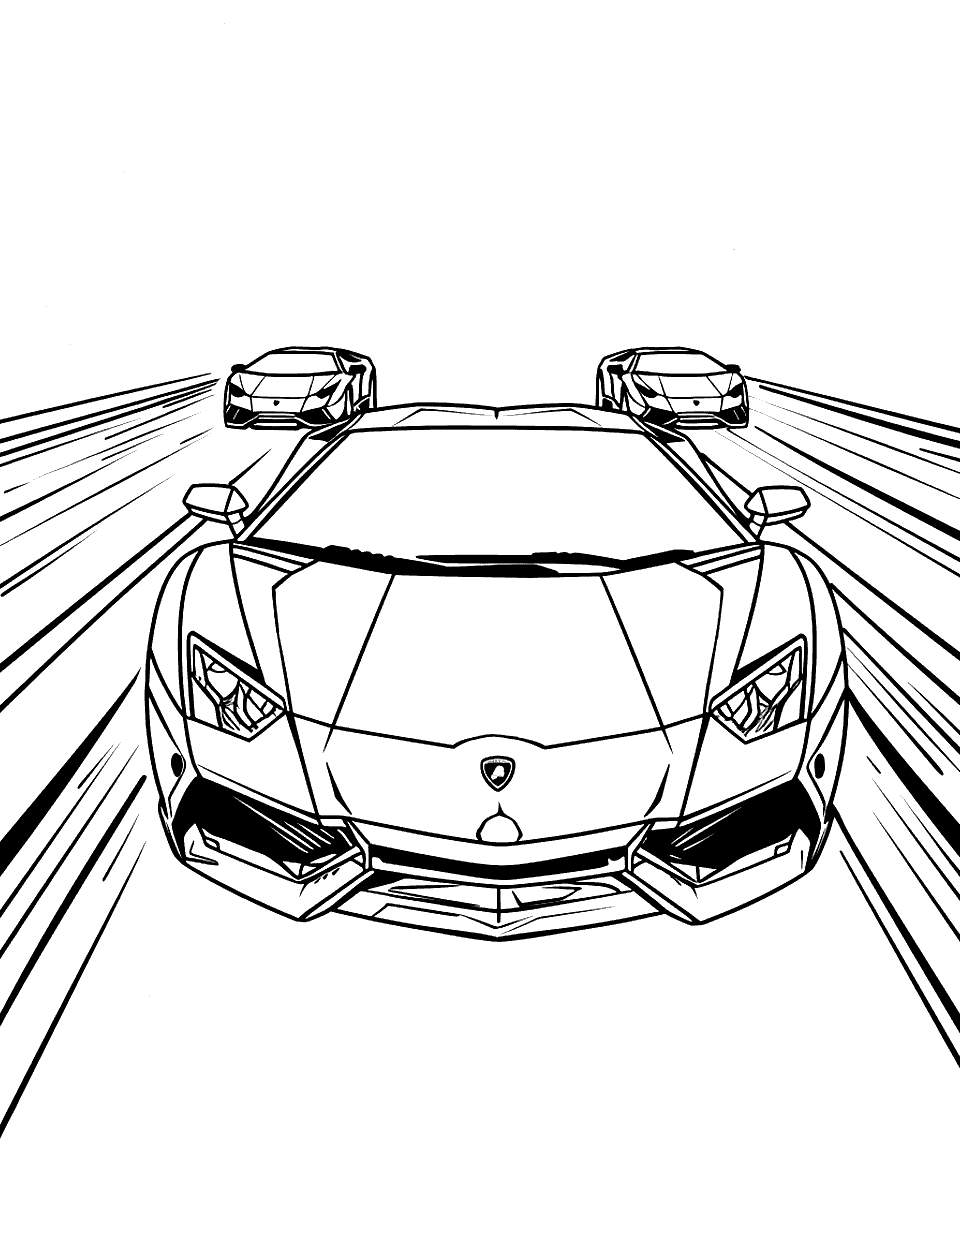 Racing Towards the Finish Lamborghini Coloring Page - Lamborghini’s racing towards a finish line.